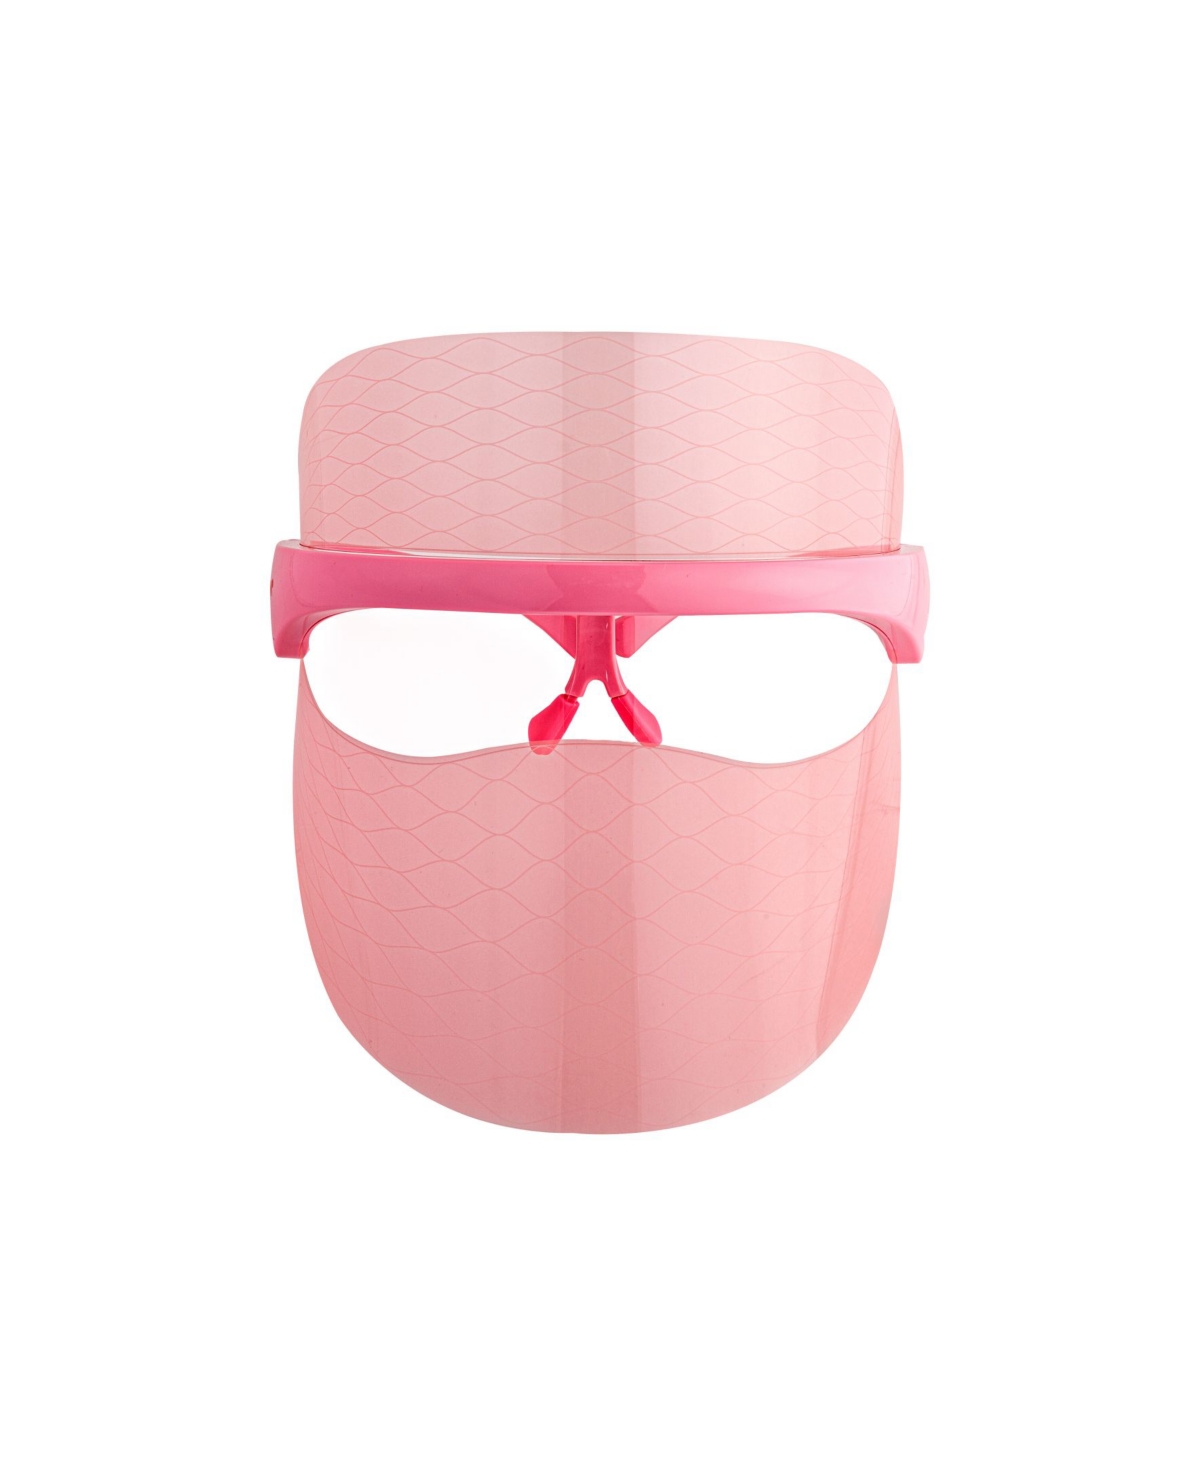 WrinkLit Led Mask - Pink